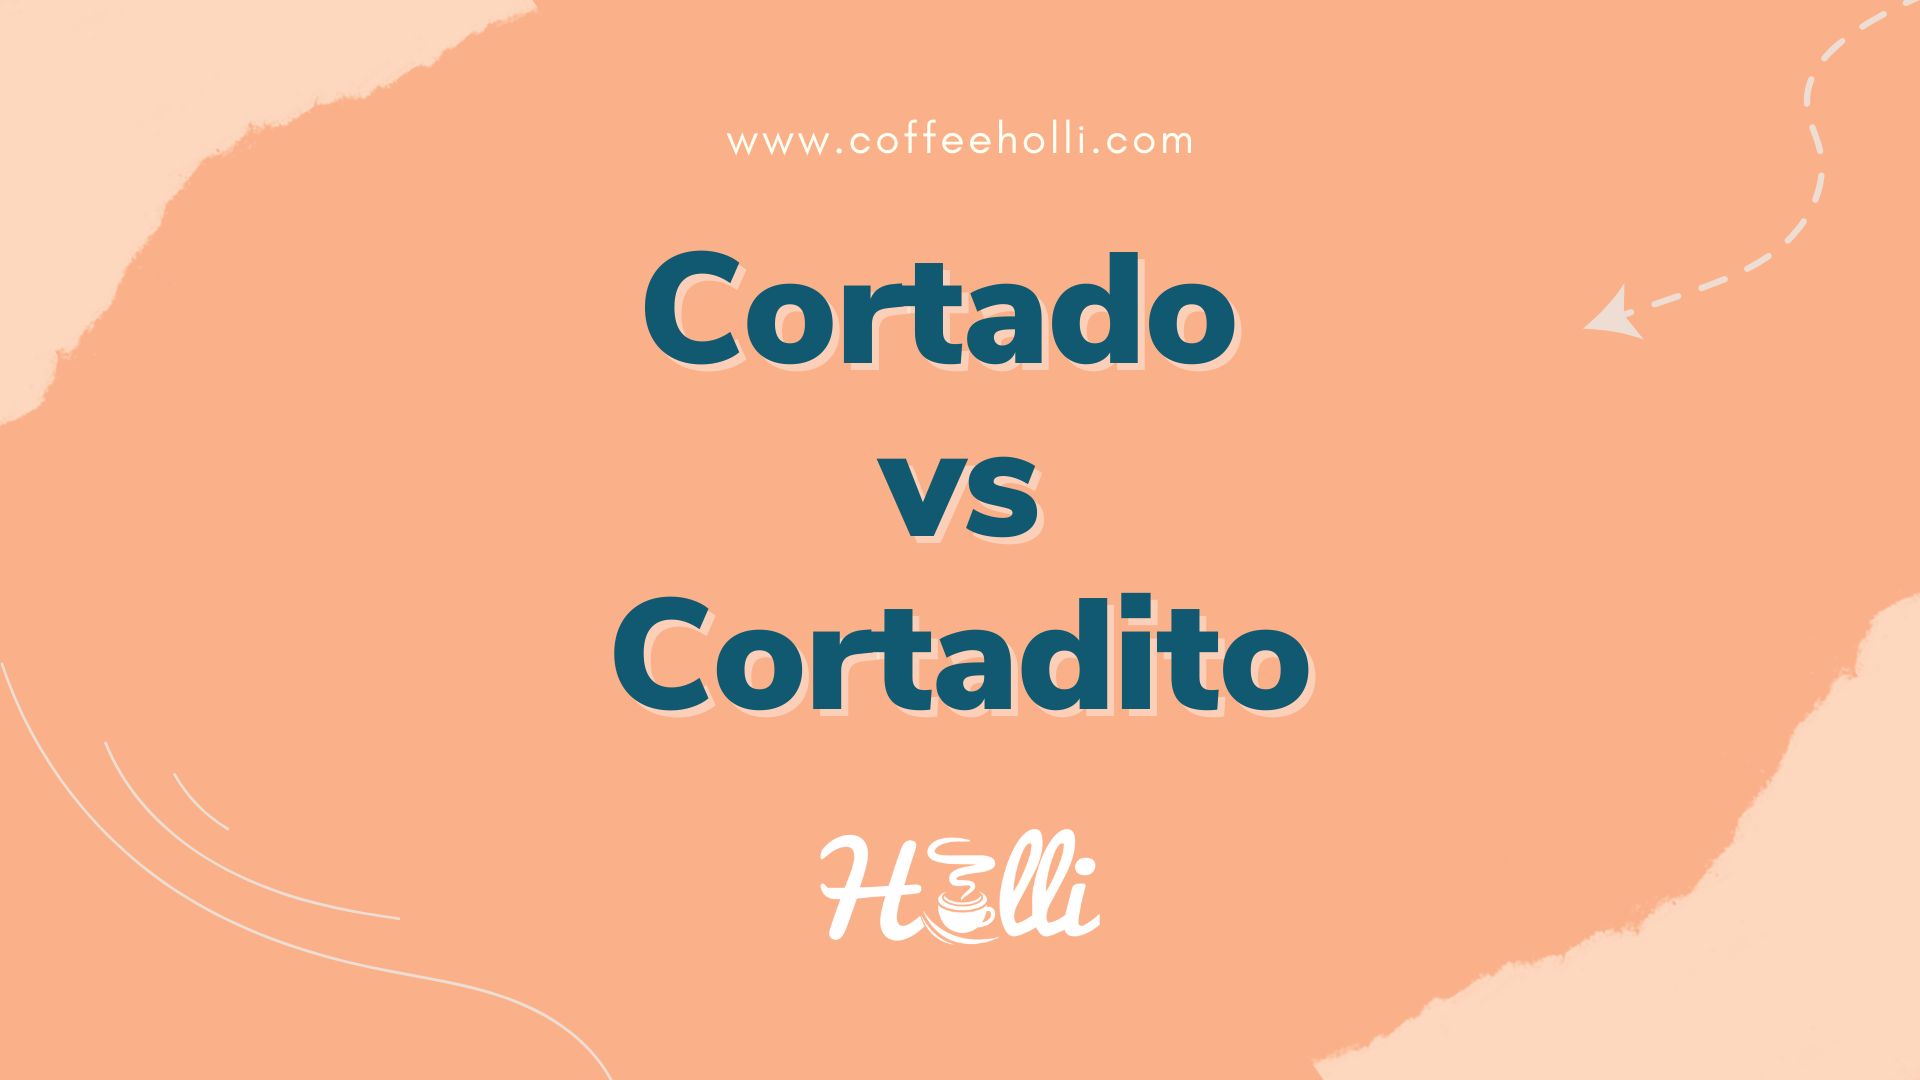 Cortado vs Cortadito